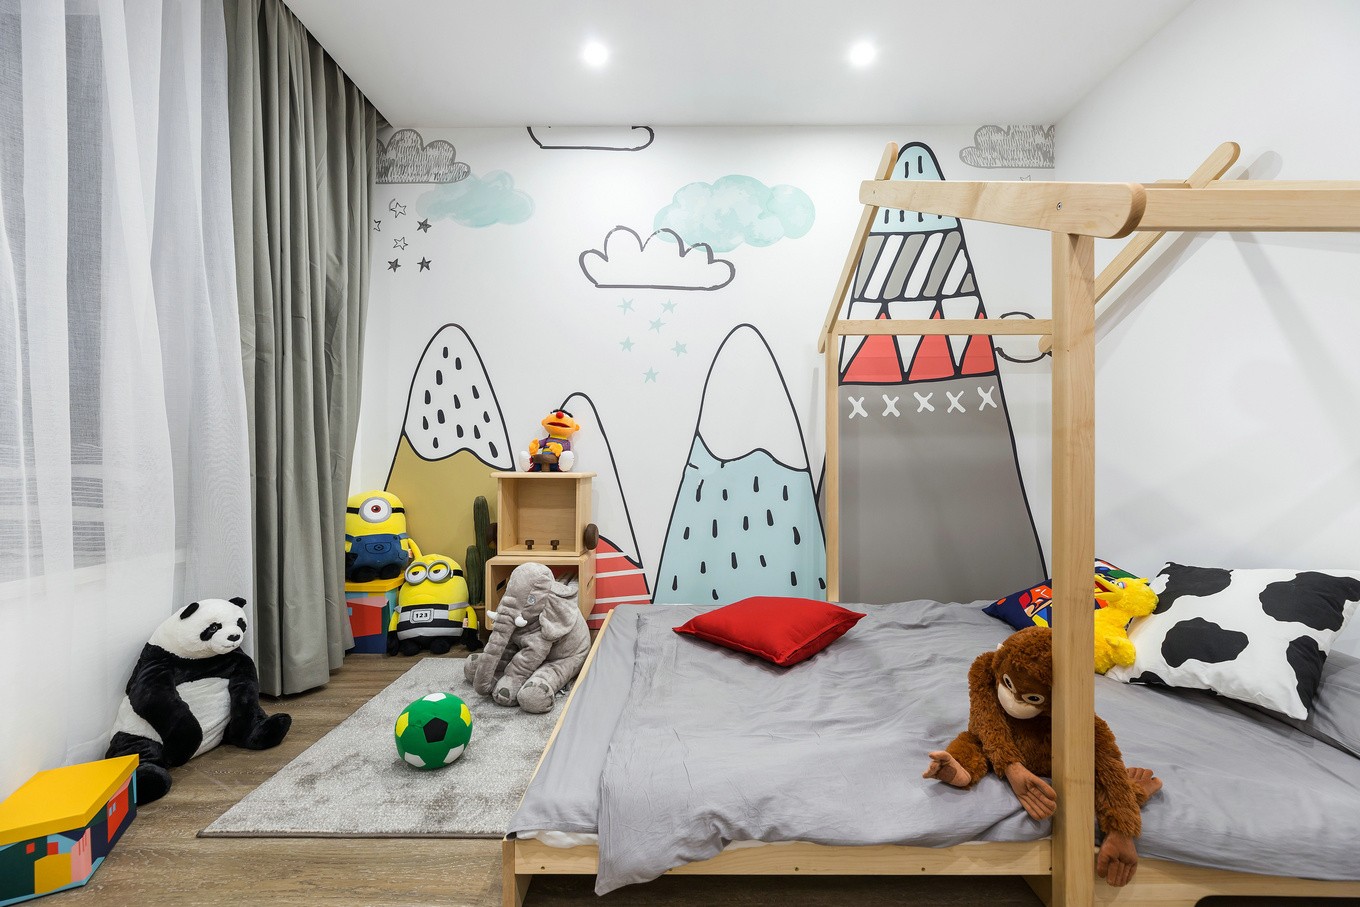 装修案例现代简约风格室内装修效果图-儿童房